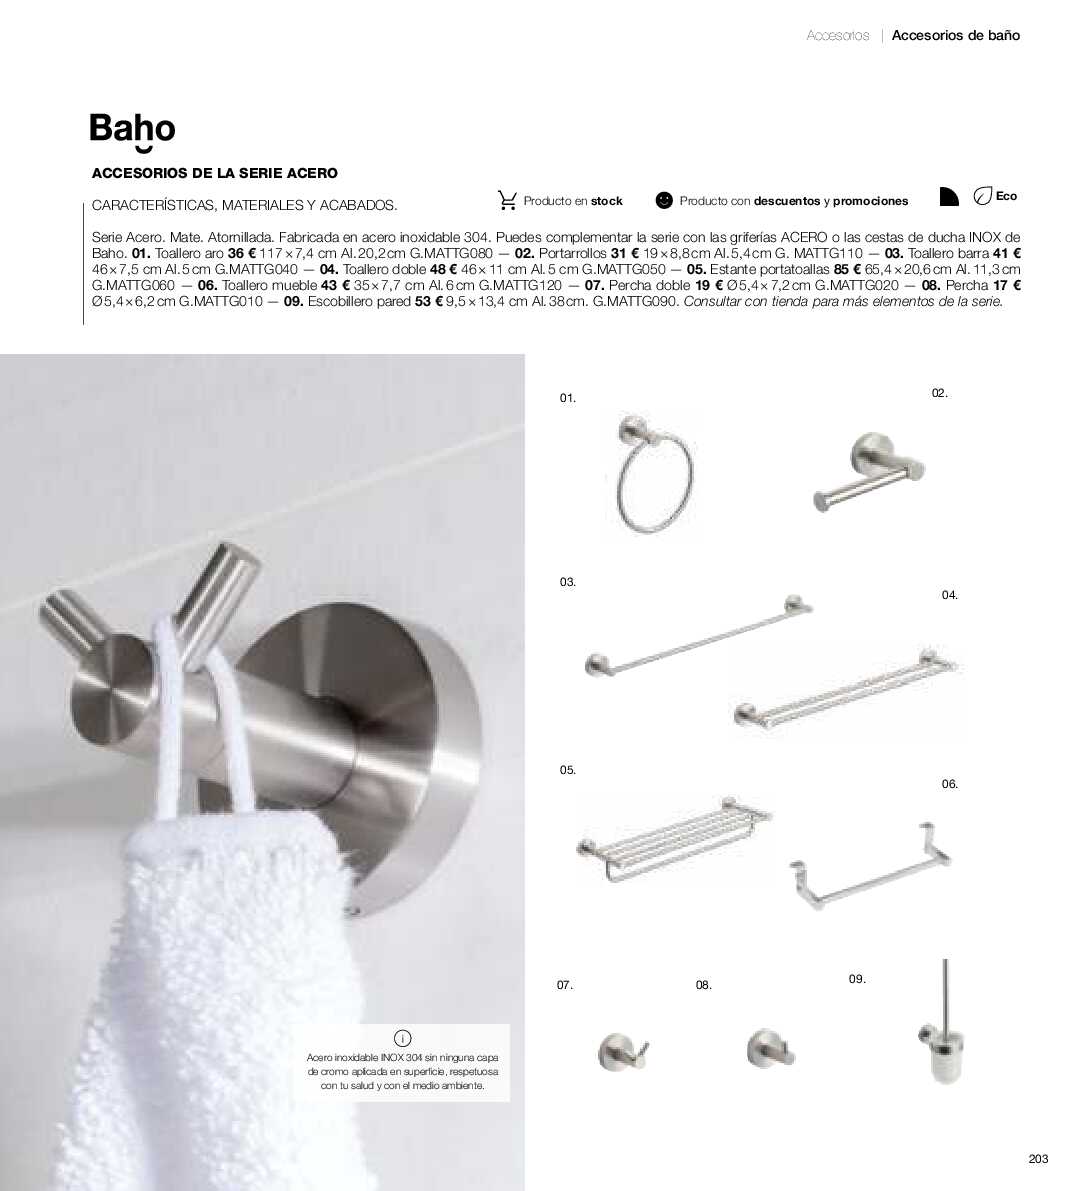 Catálogo de baños Gamma. Página 202